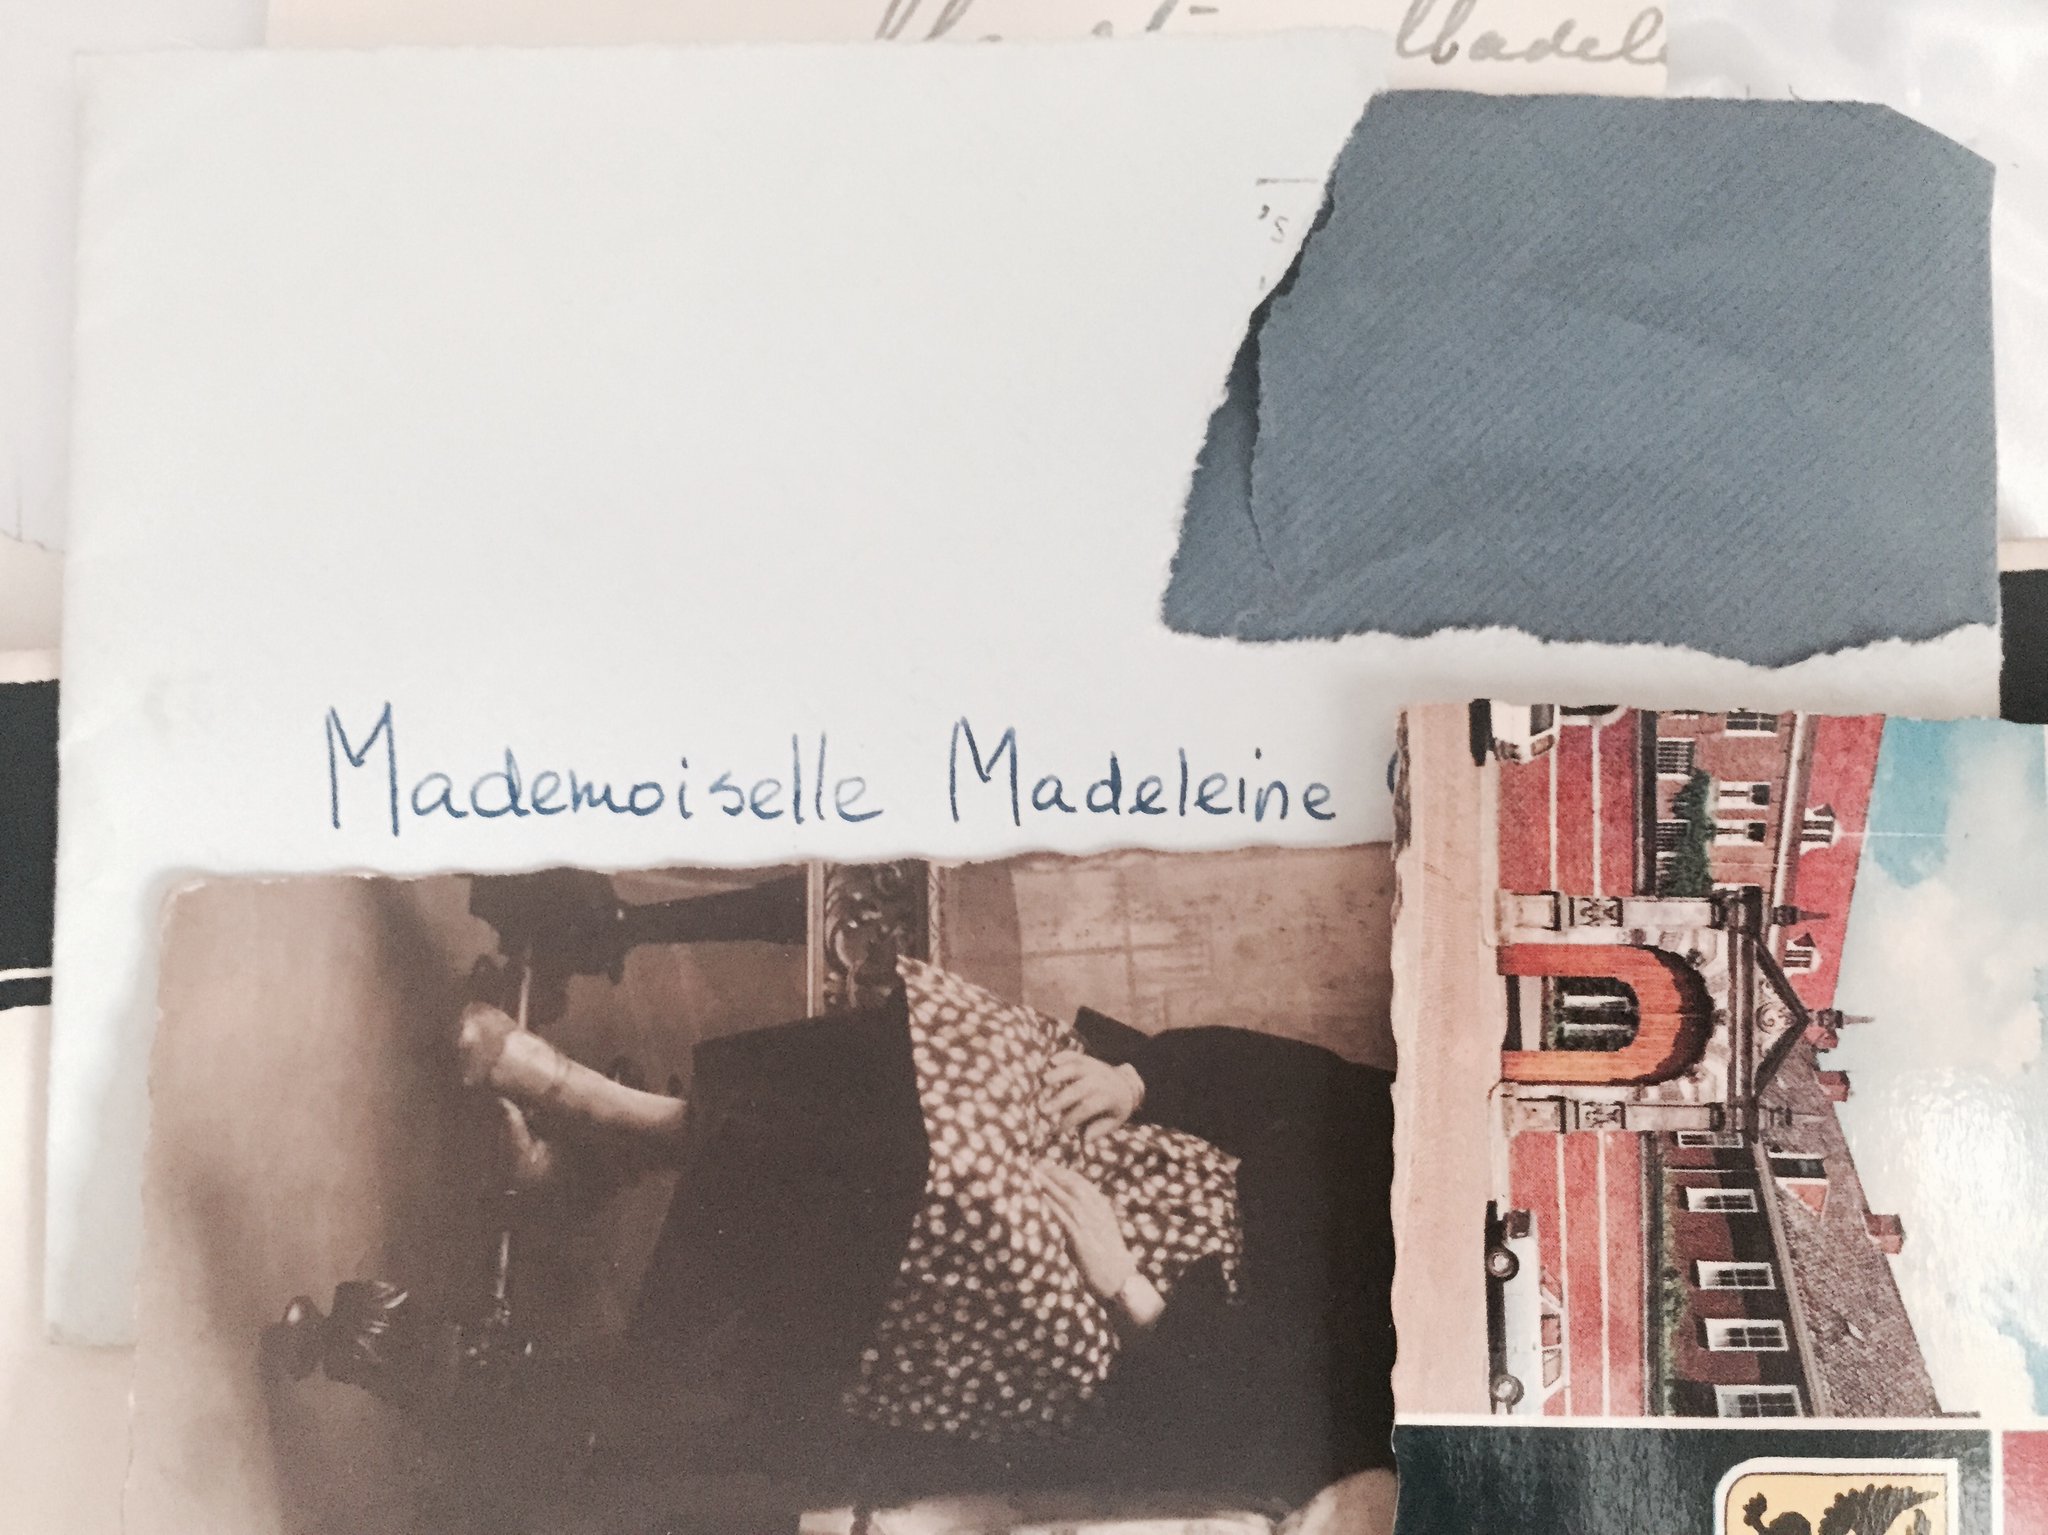 Parfois je veux voir la date sur l'enveloppe, mais Madeleine a retiré le timbre pour leur collection, forcément ! :) https://t.co/vMZAPBVGbP